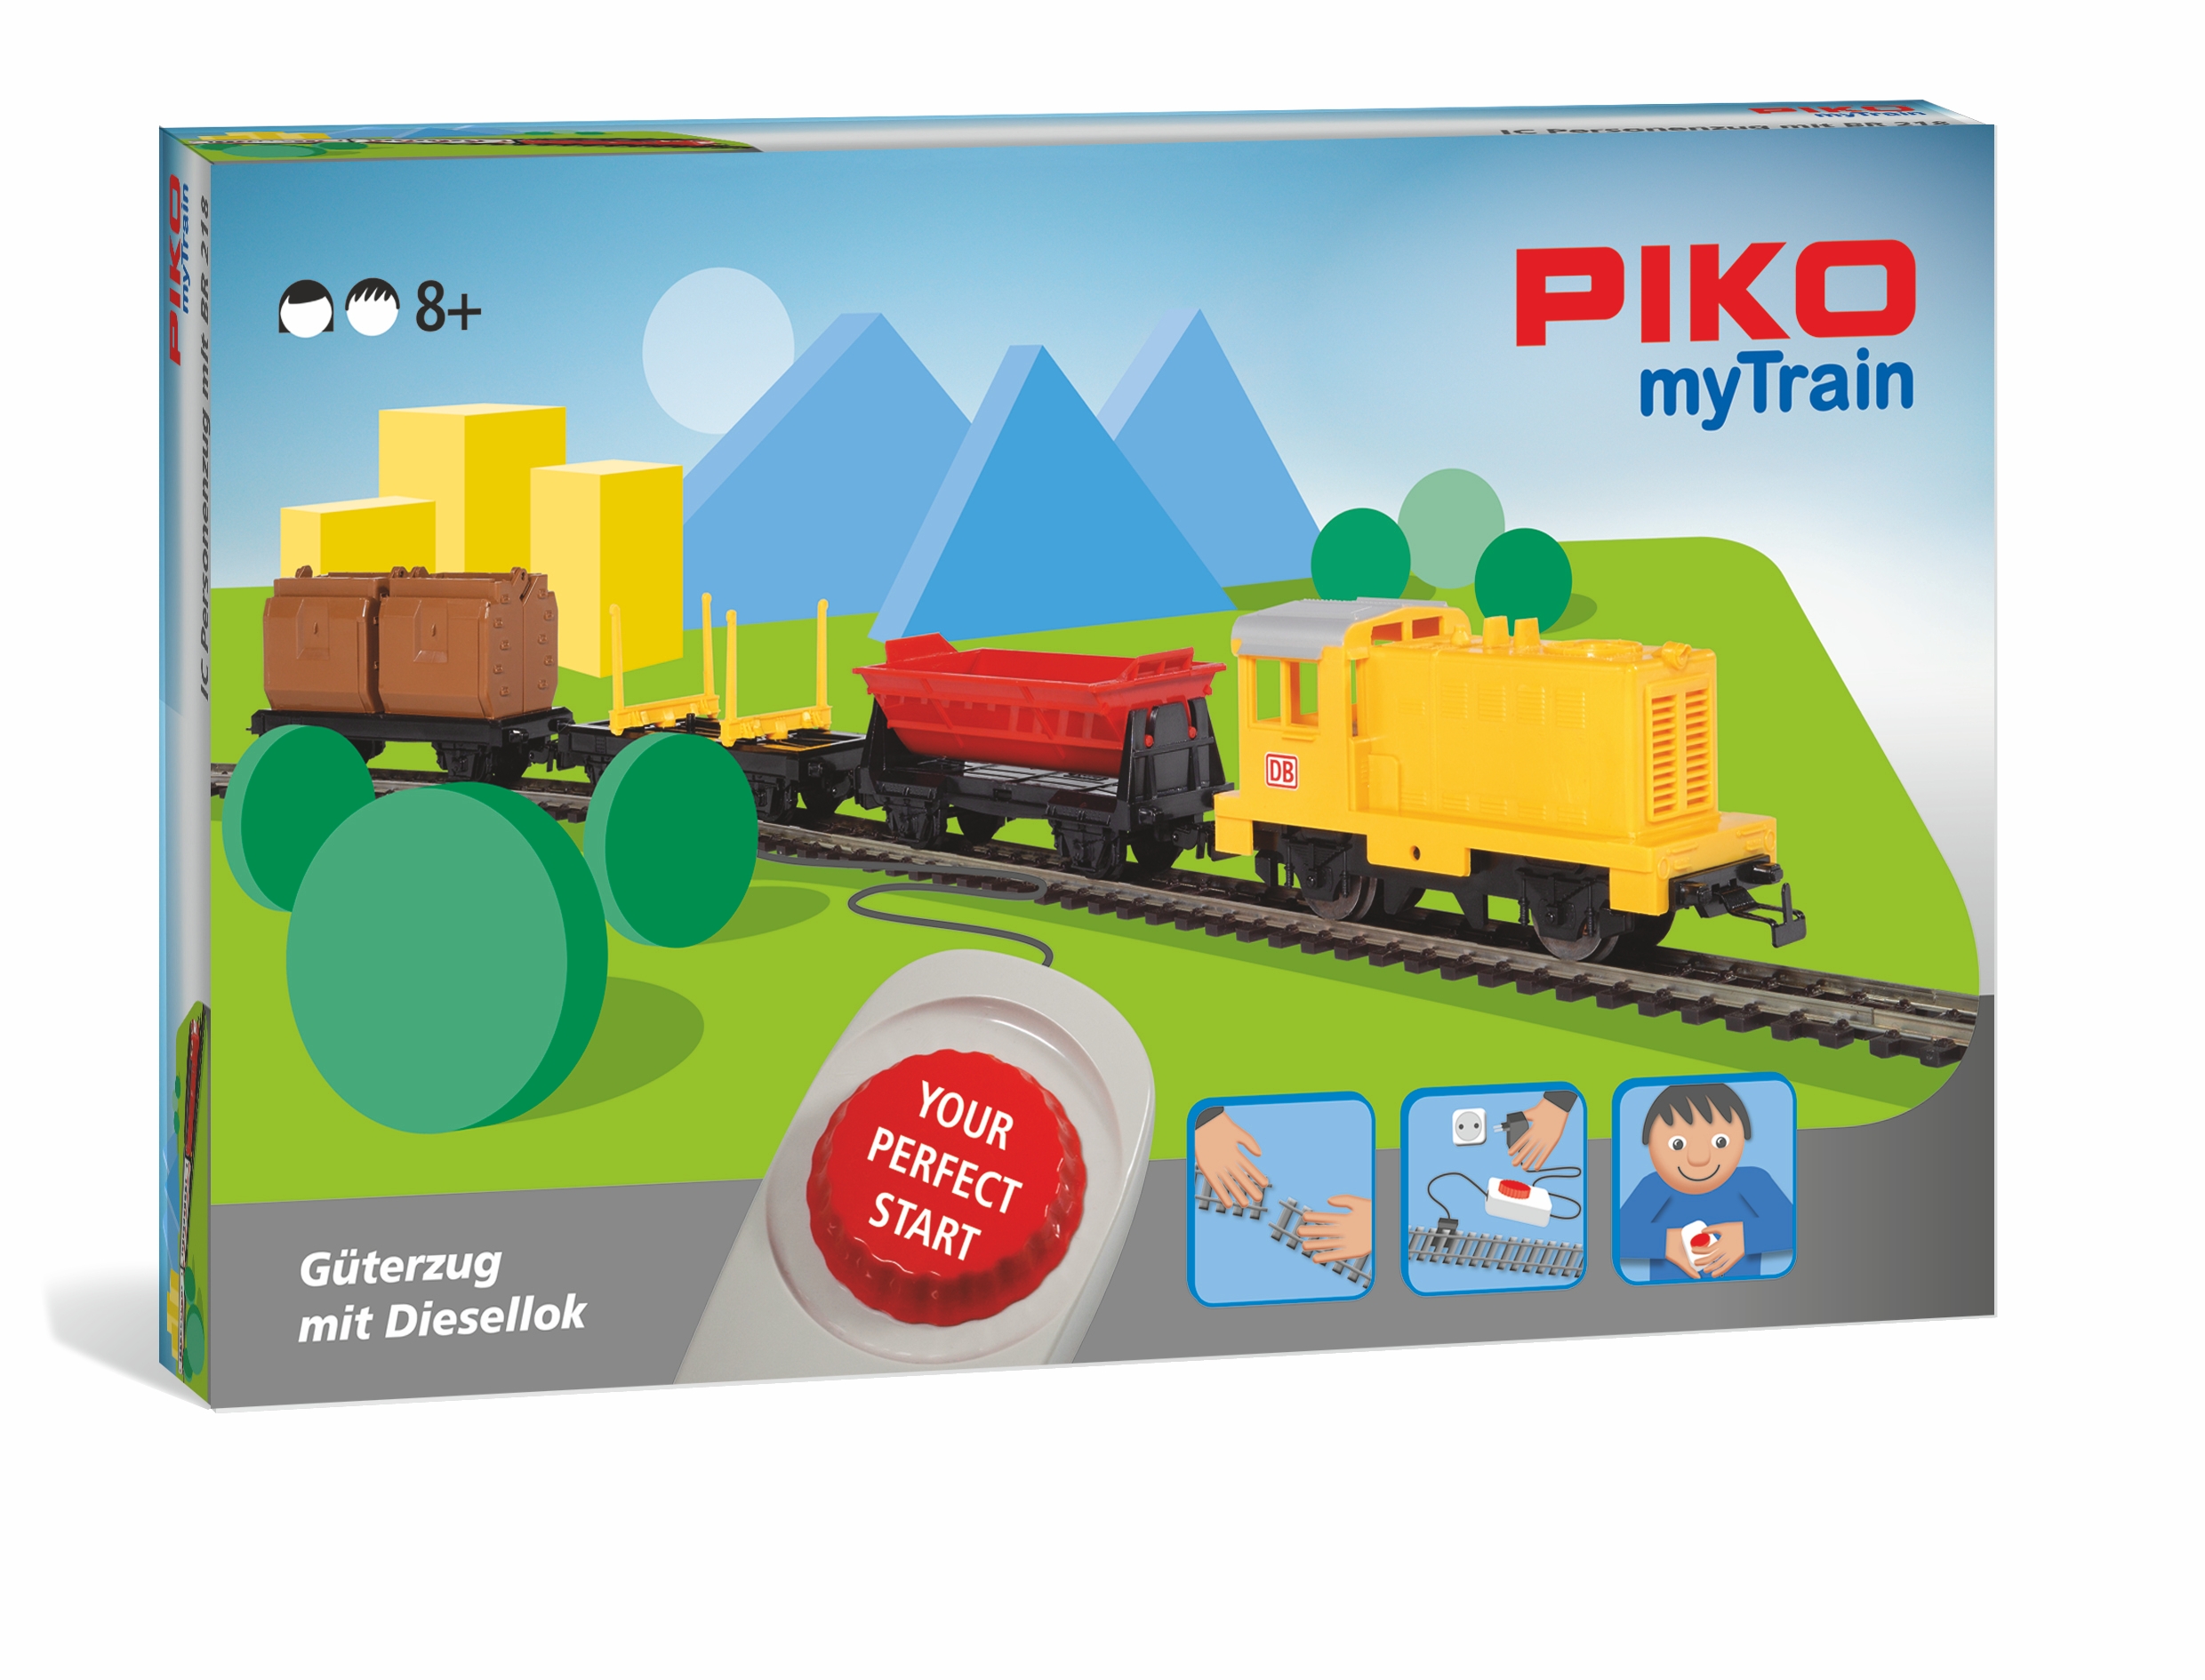 piko-57090-1-myTrain-Güterzug-mit-Diesellok-Modelleisenbahn-Startset-für-Kinder-zum-Spielen